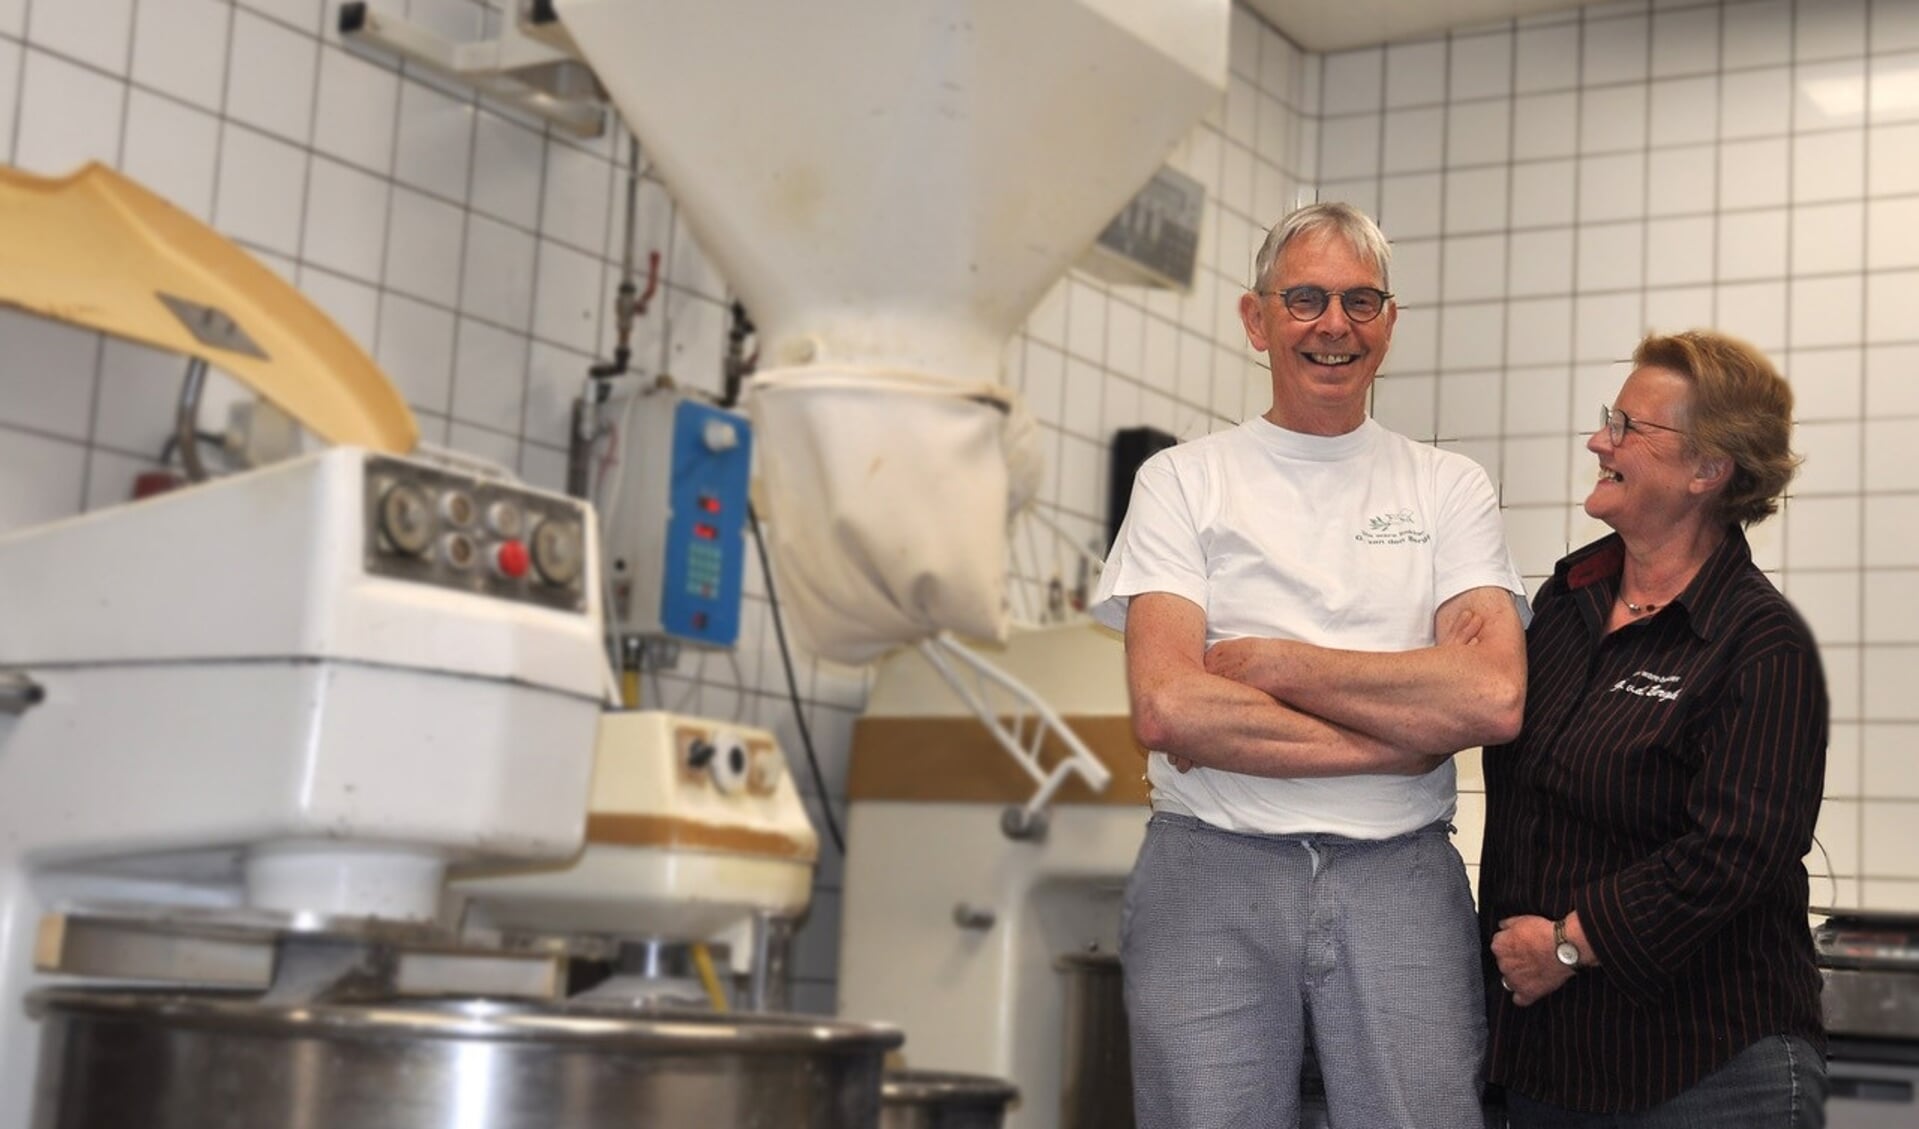 Gerrie en Gertruud van den Bergh vieren het honderdjarig jubileum van hun bakkerij en trakteren op ontbijt. 